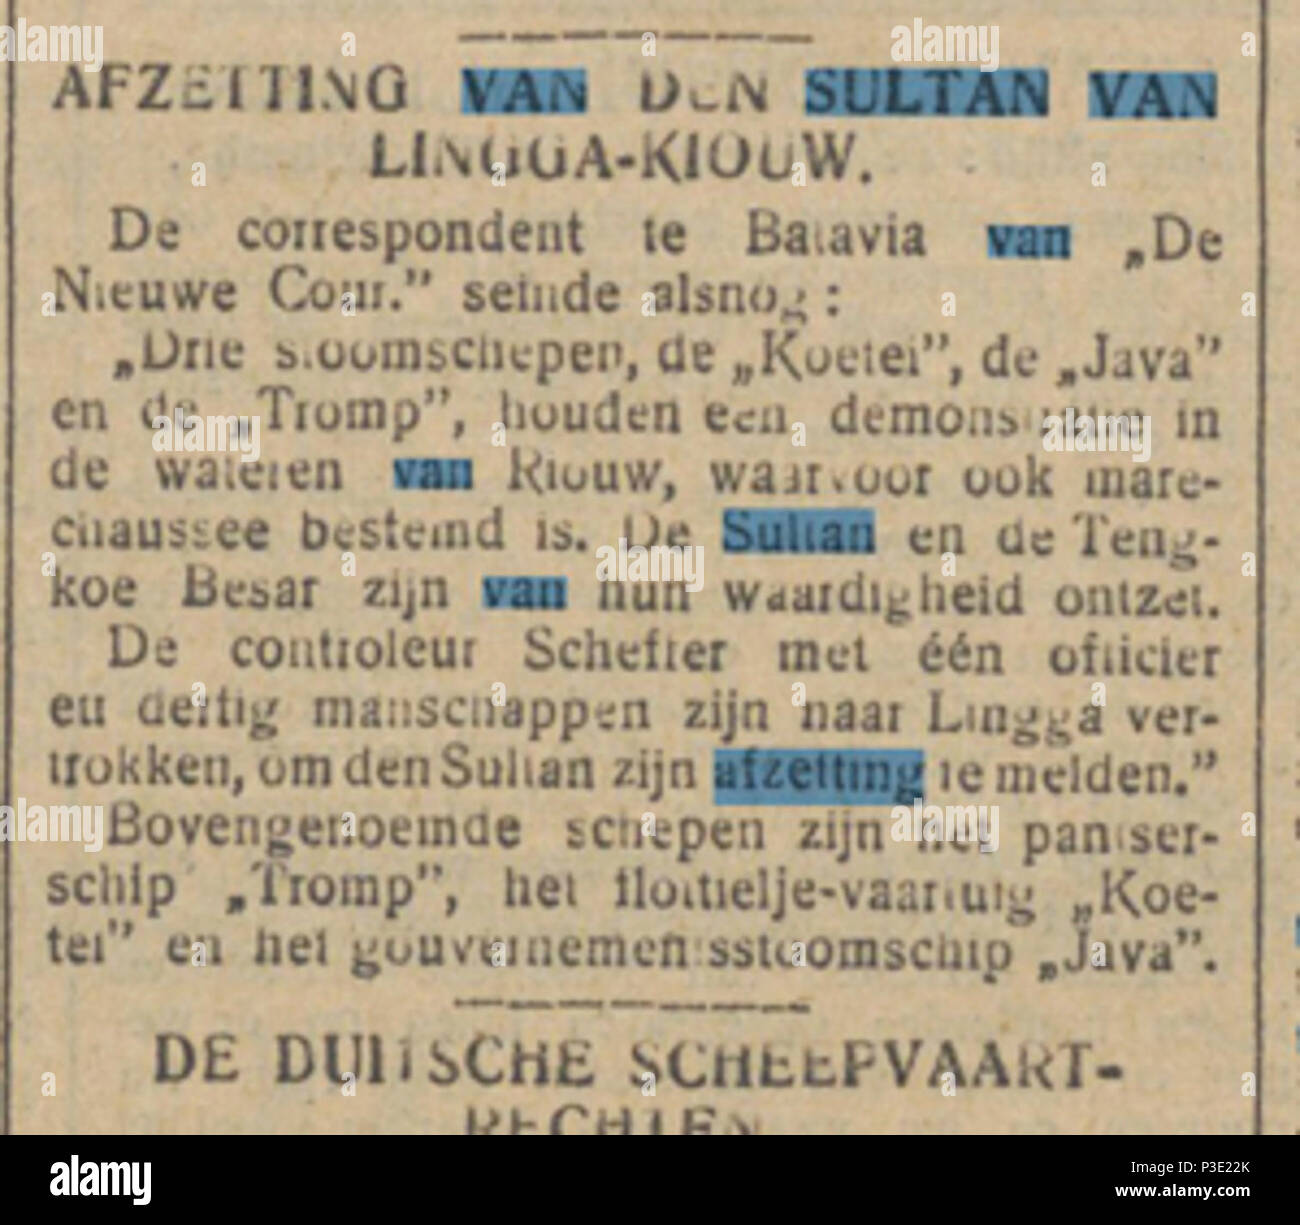 1 Tijd godsdienstig-staatkundig-dagblad 11-feb-1911. Stock Photo